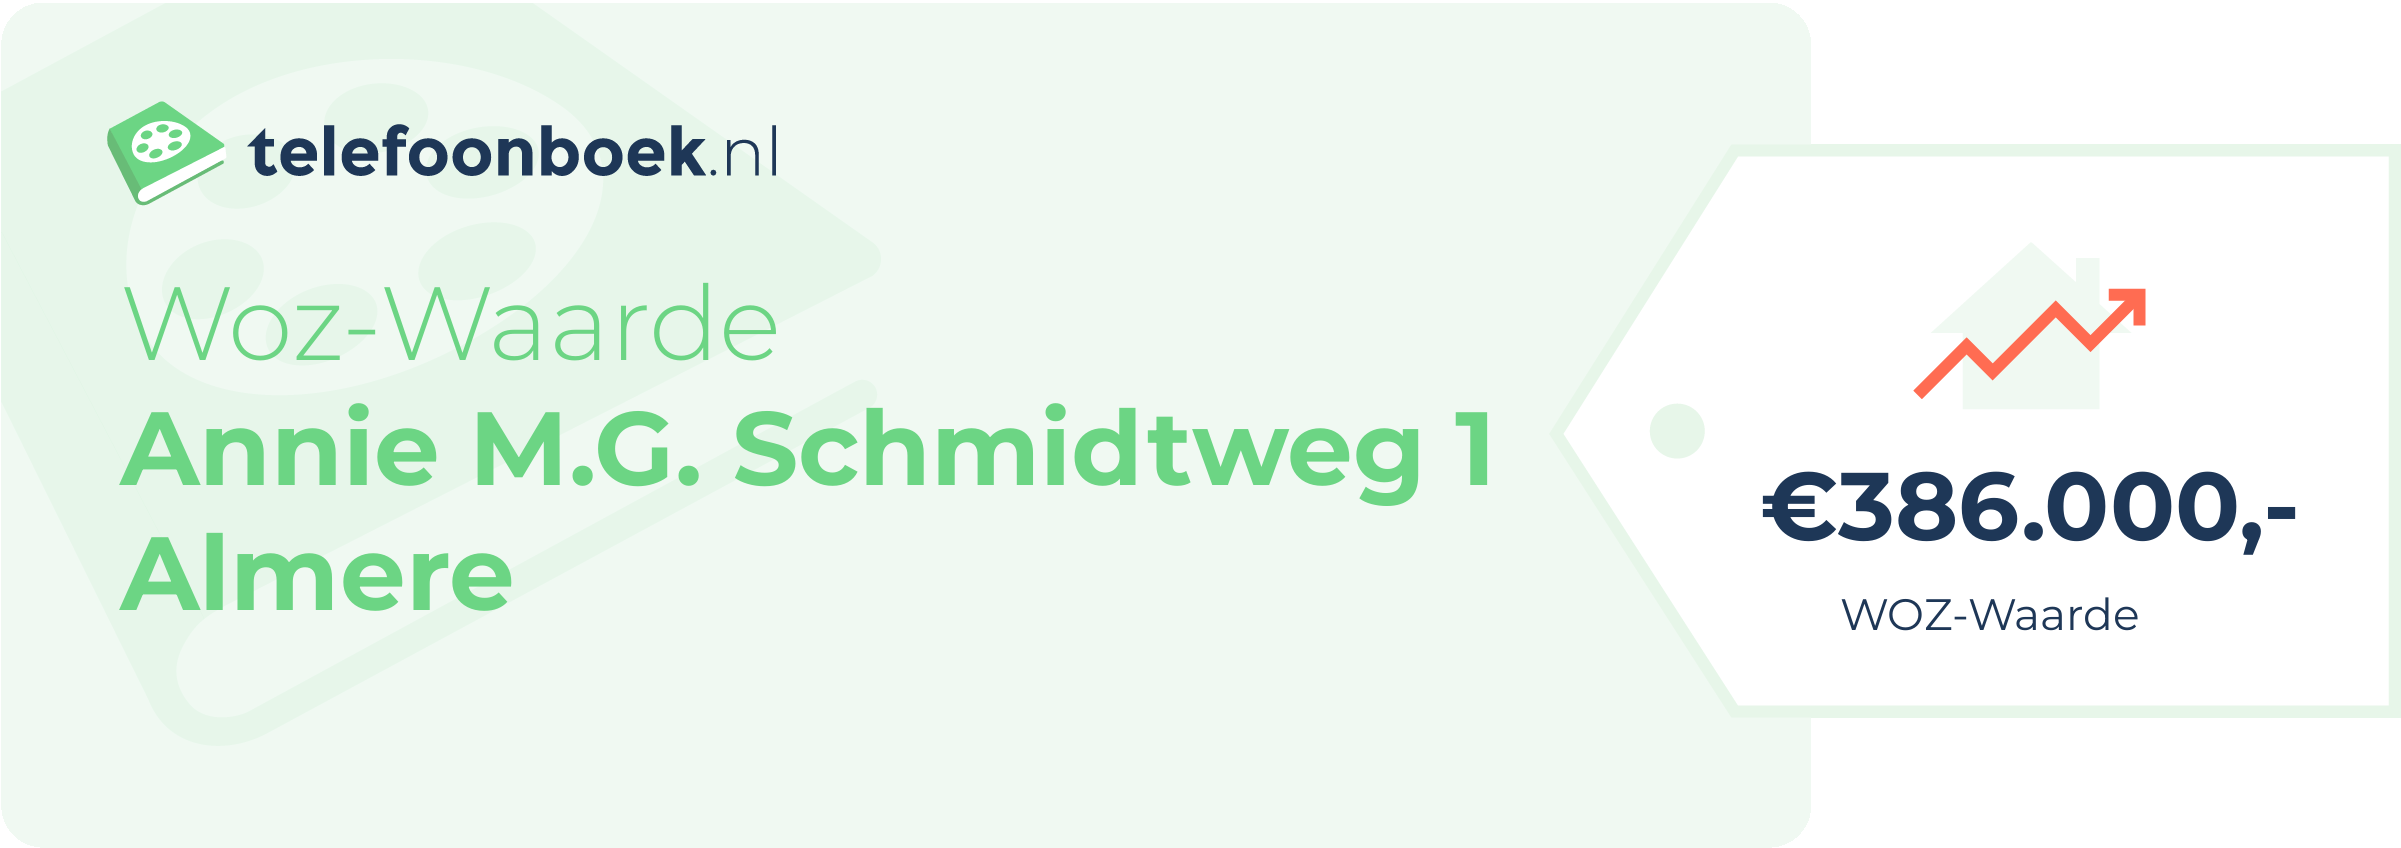 WOZ-waarde Annie M.G. Schmidtweg 1 Almere